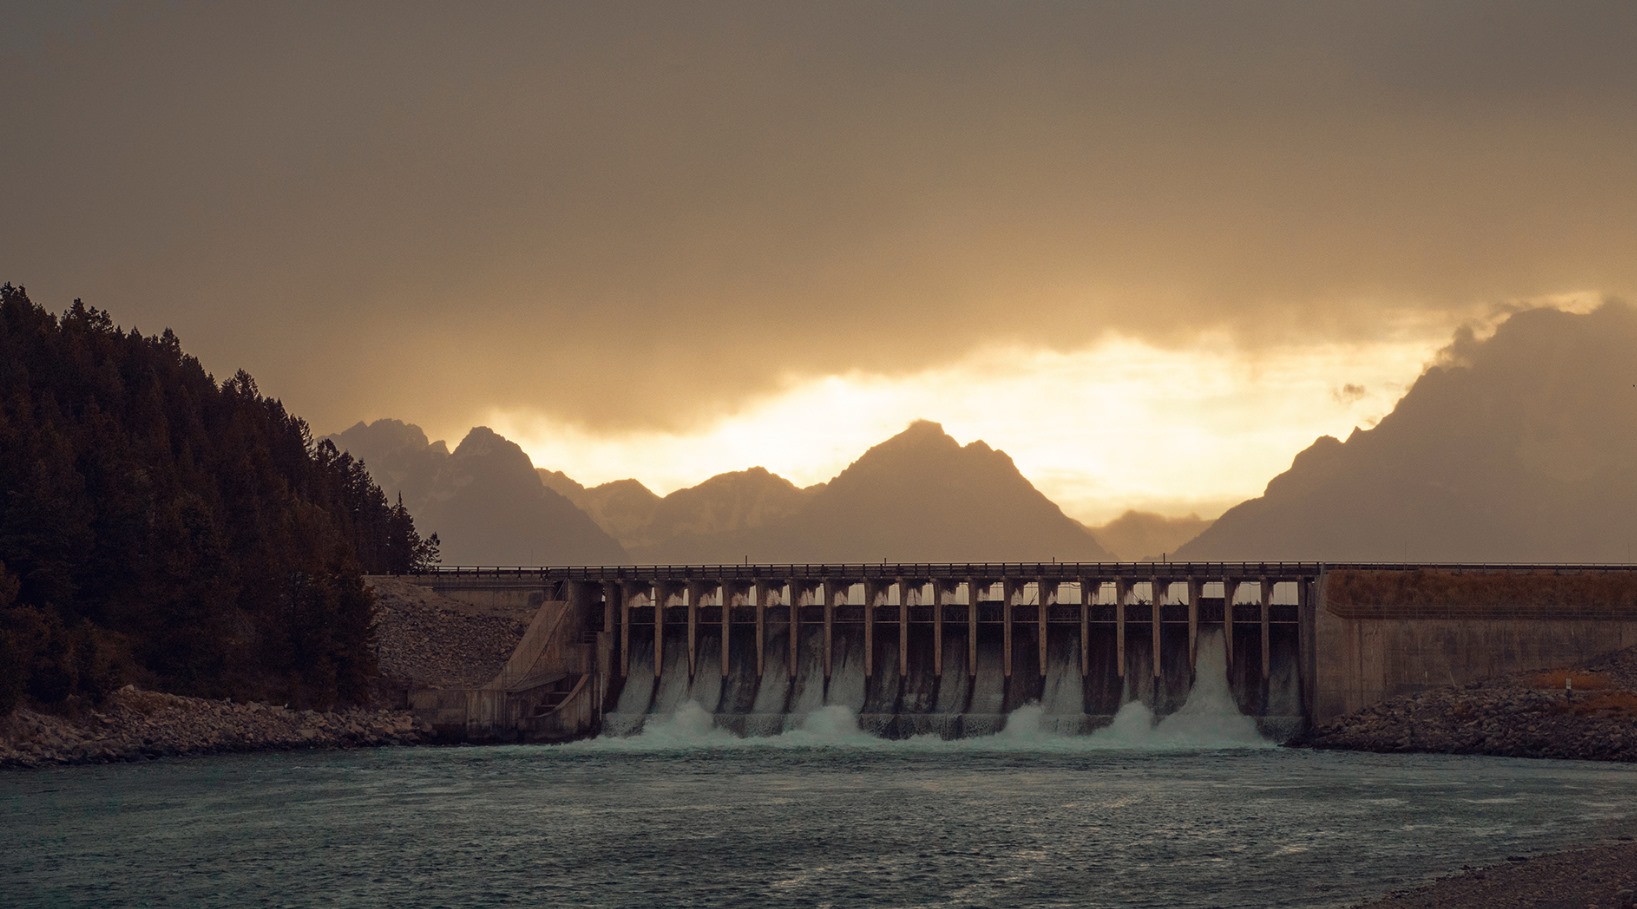 Hidroelectrica a semnat contractul pentru modernizarea Barajului deversor Gogoșu, de 41 milioane lei